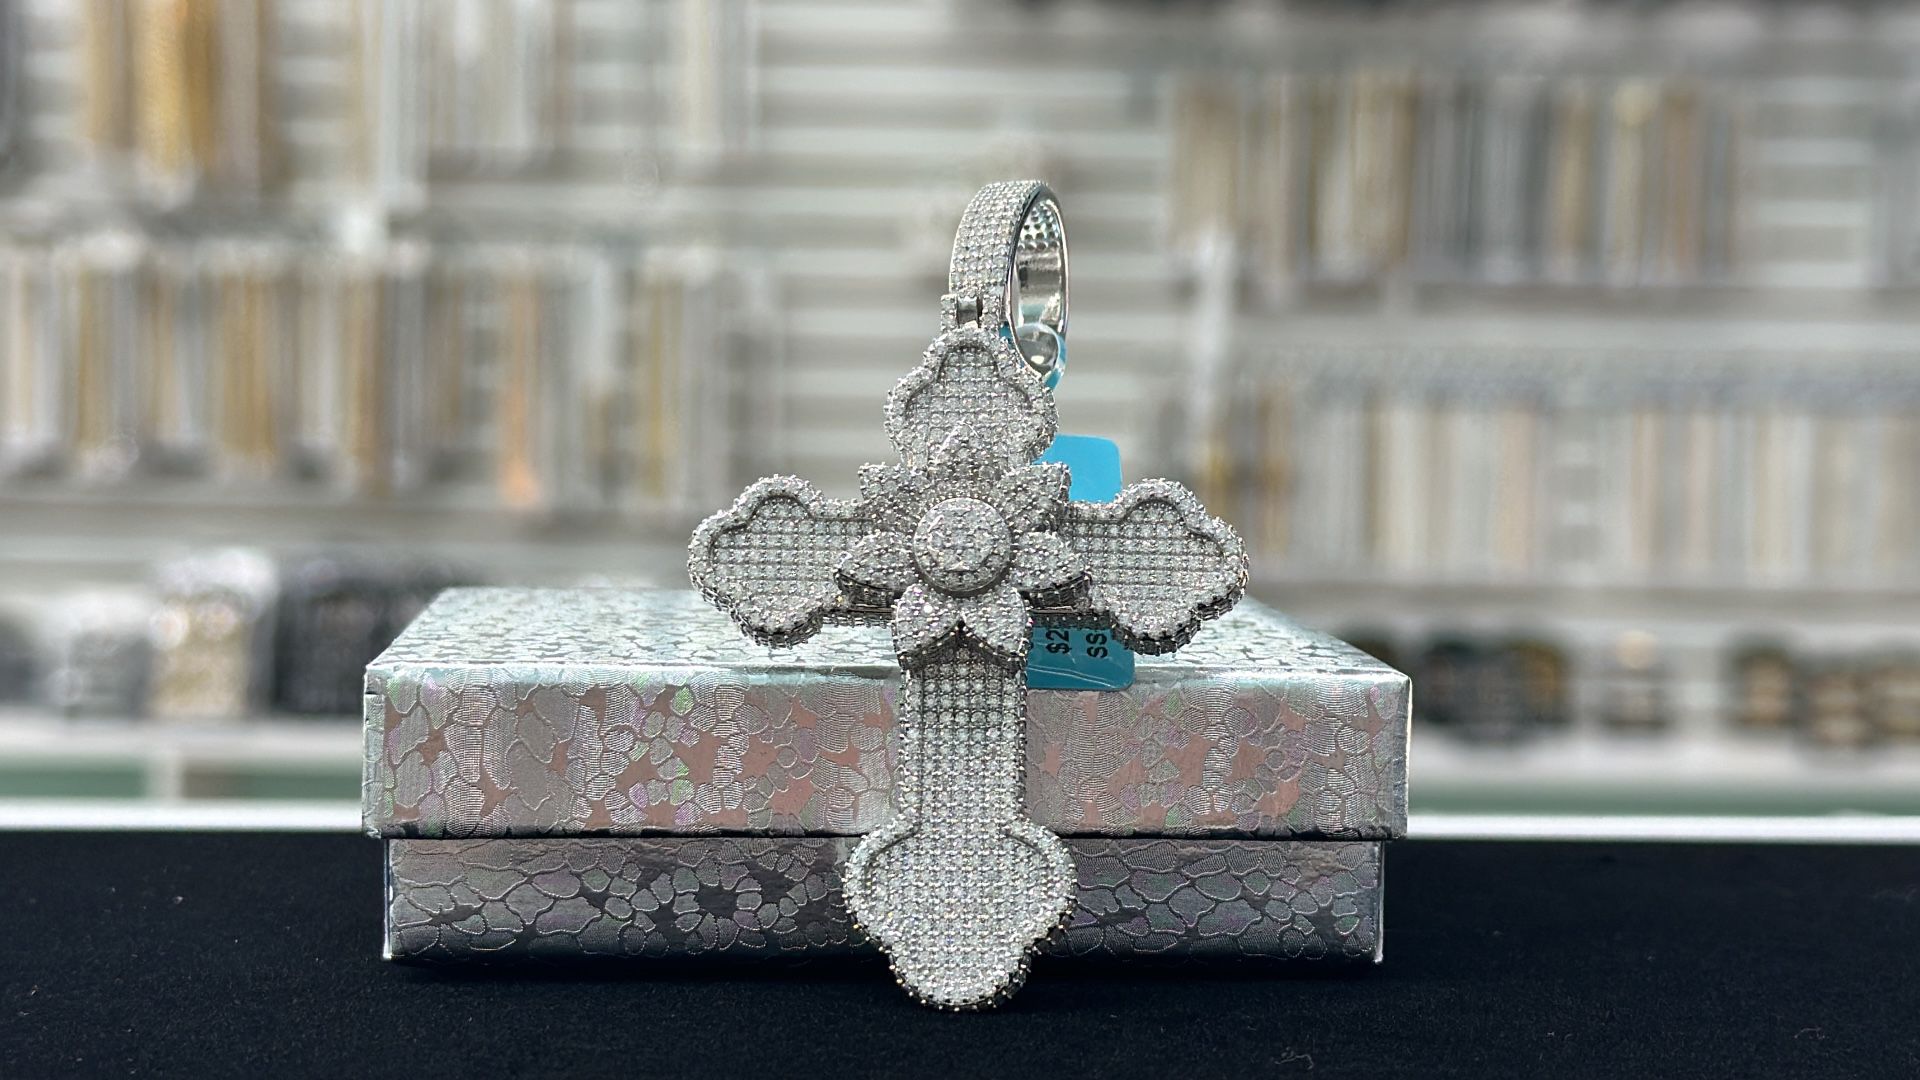 Sterling Silver Jumbo Flower Cross Pendant 